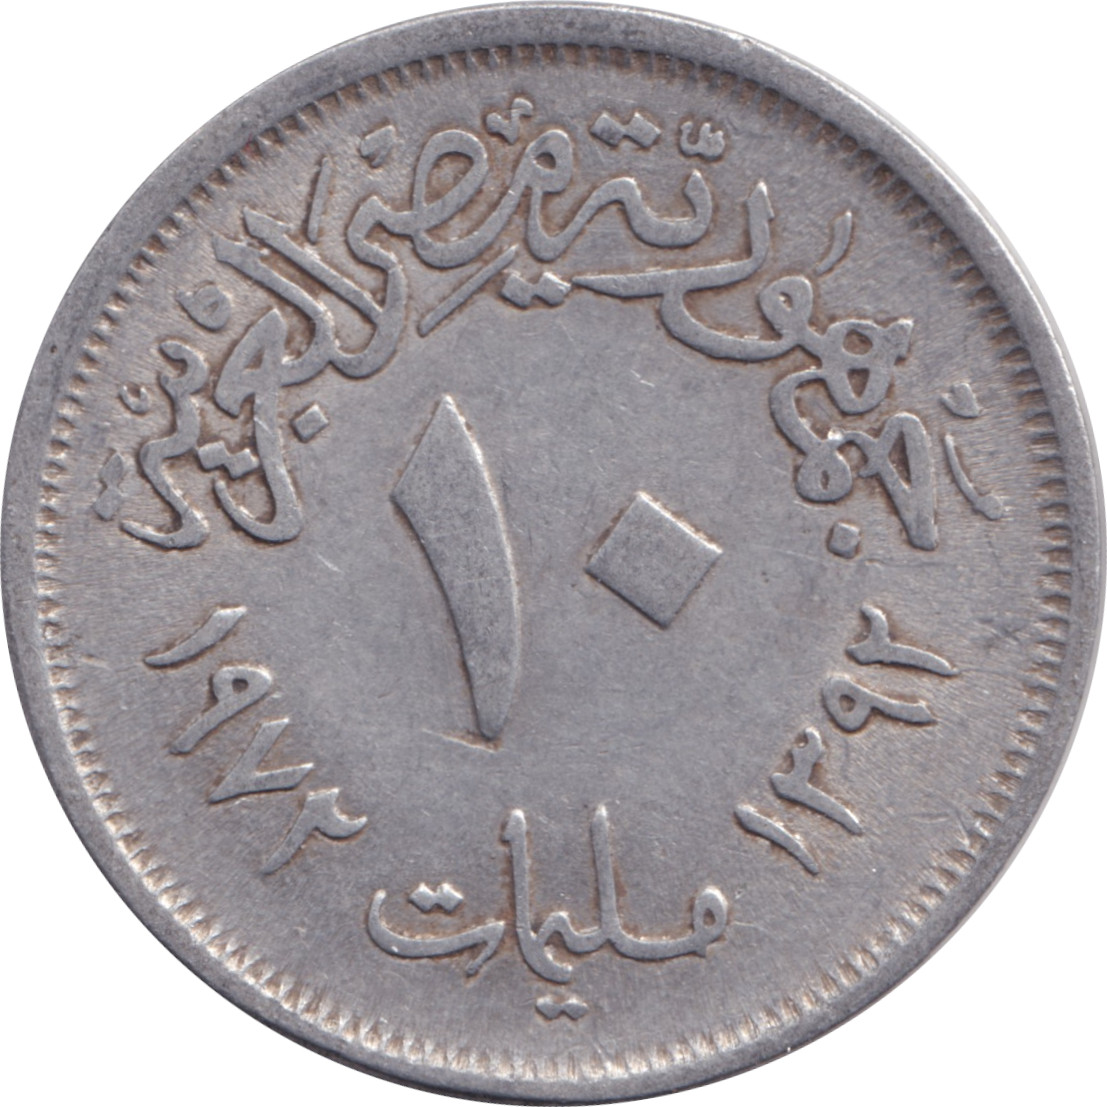 10 milliemes - République arabe - Type 1